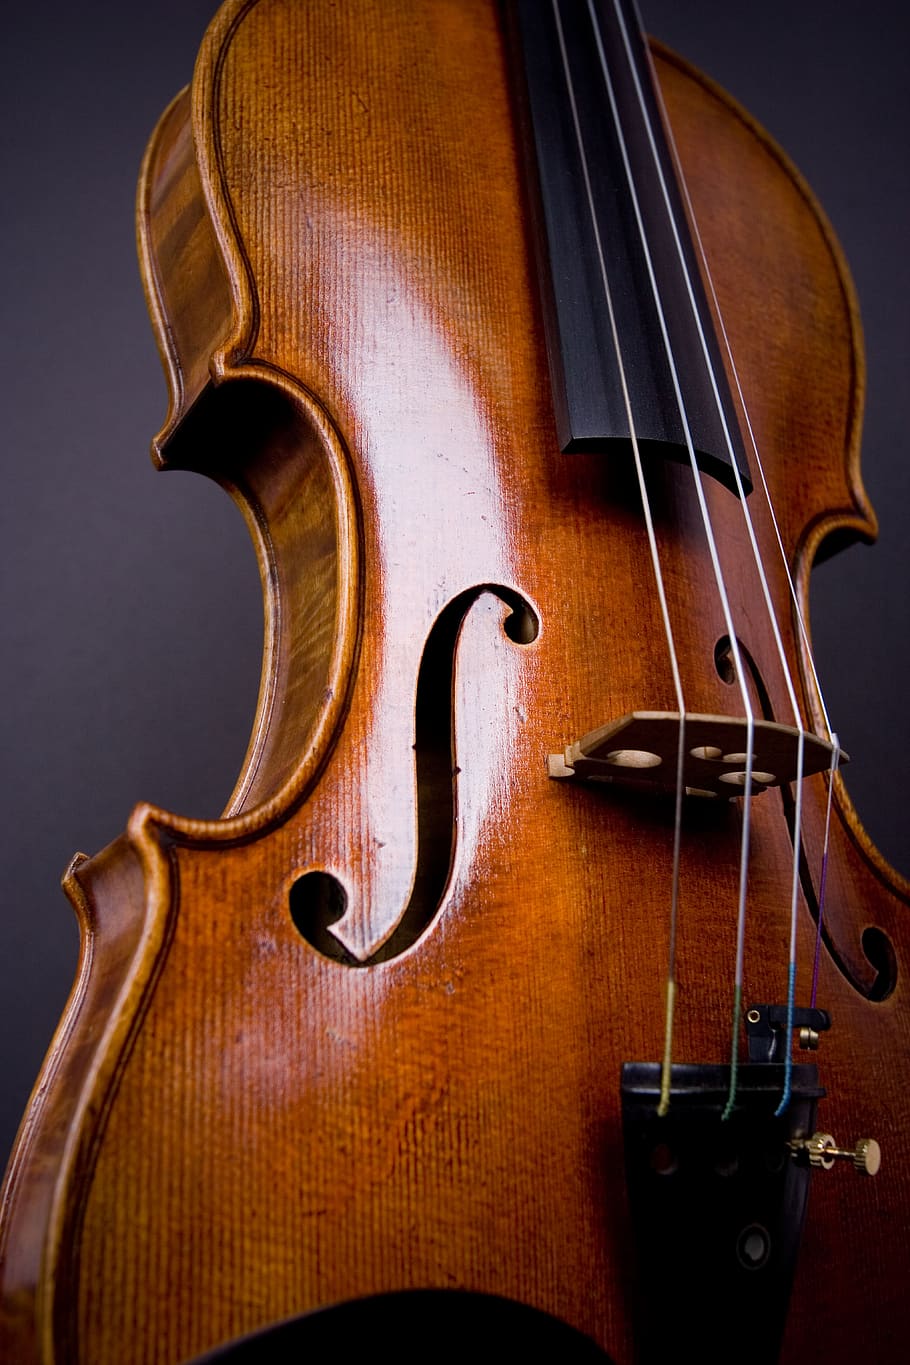 violino, viola, orquestra, violoncelo, clássico, instrumento, instrumento de cordas, música, equipamento musical, instrumento musical